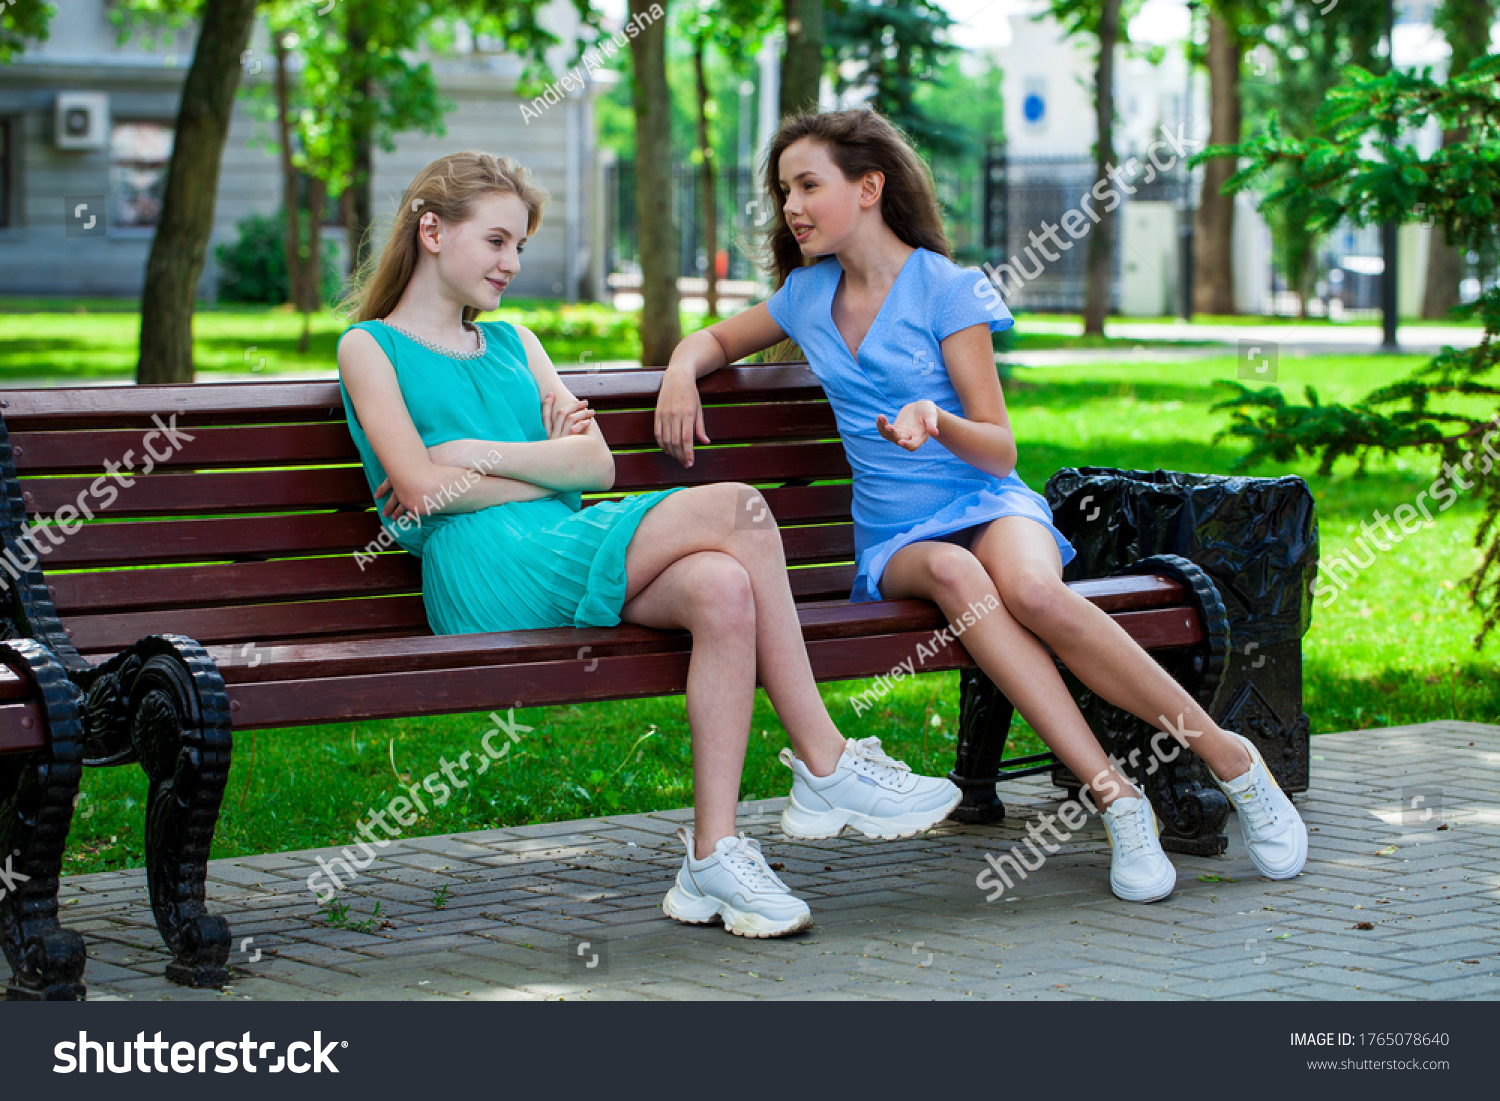 Молодую имеют несколько. Девочки сидят на скомейк. Две девушки на скамейке. Подруги сидят на скамейке. Девочка сидит на скамейке.